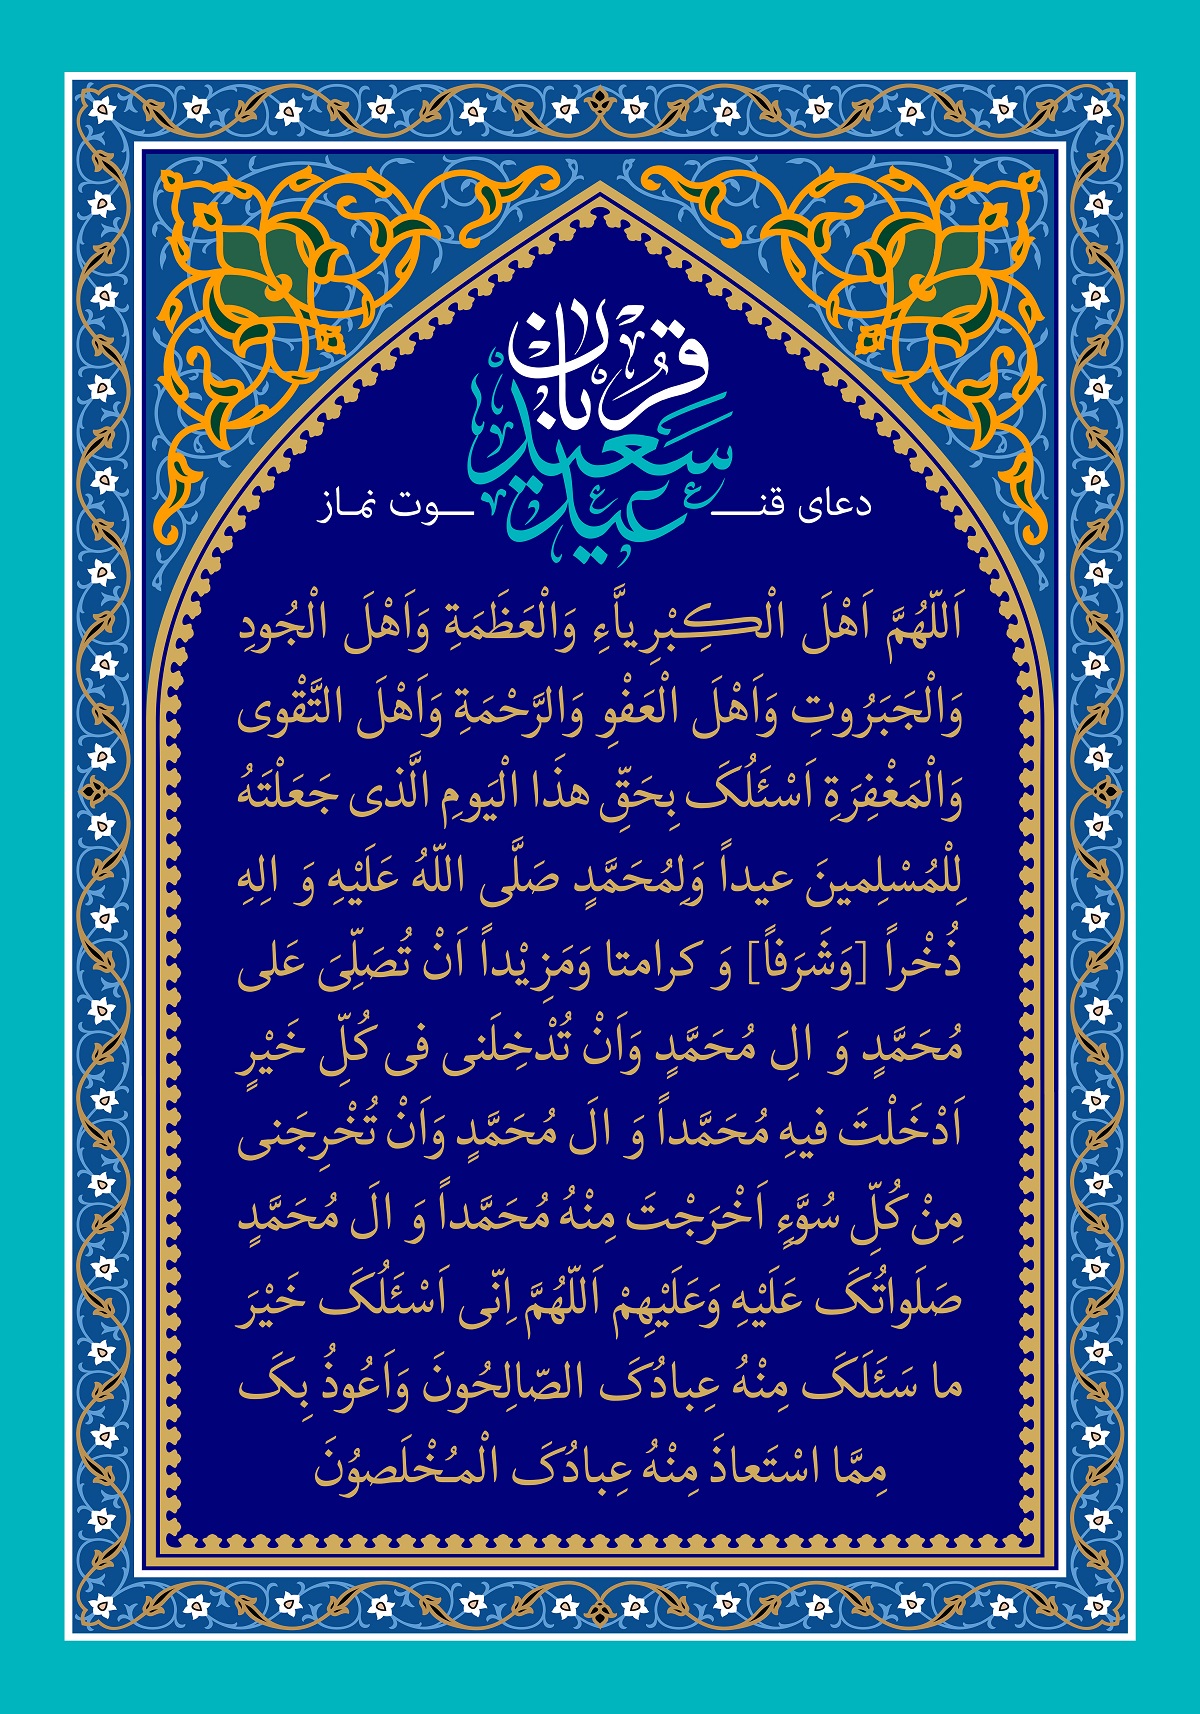 فایل لایه باز (psd): پوستر دعای قنوت عید سعید قربان